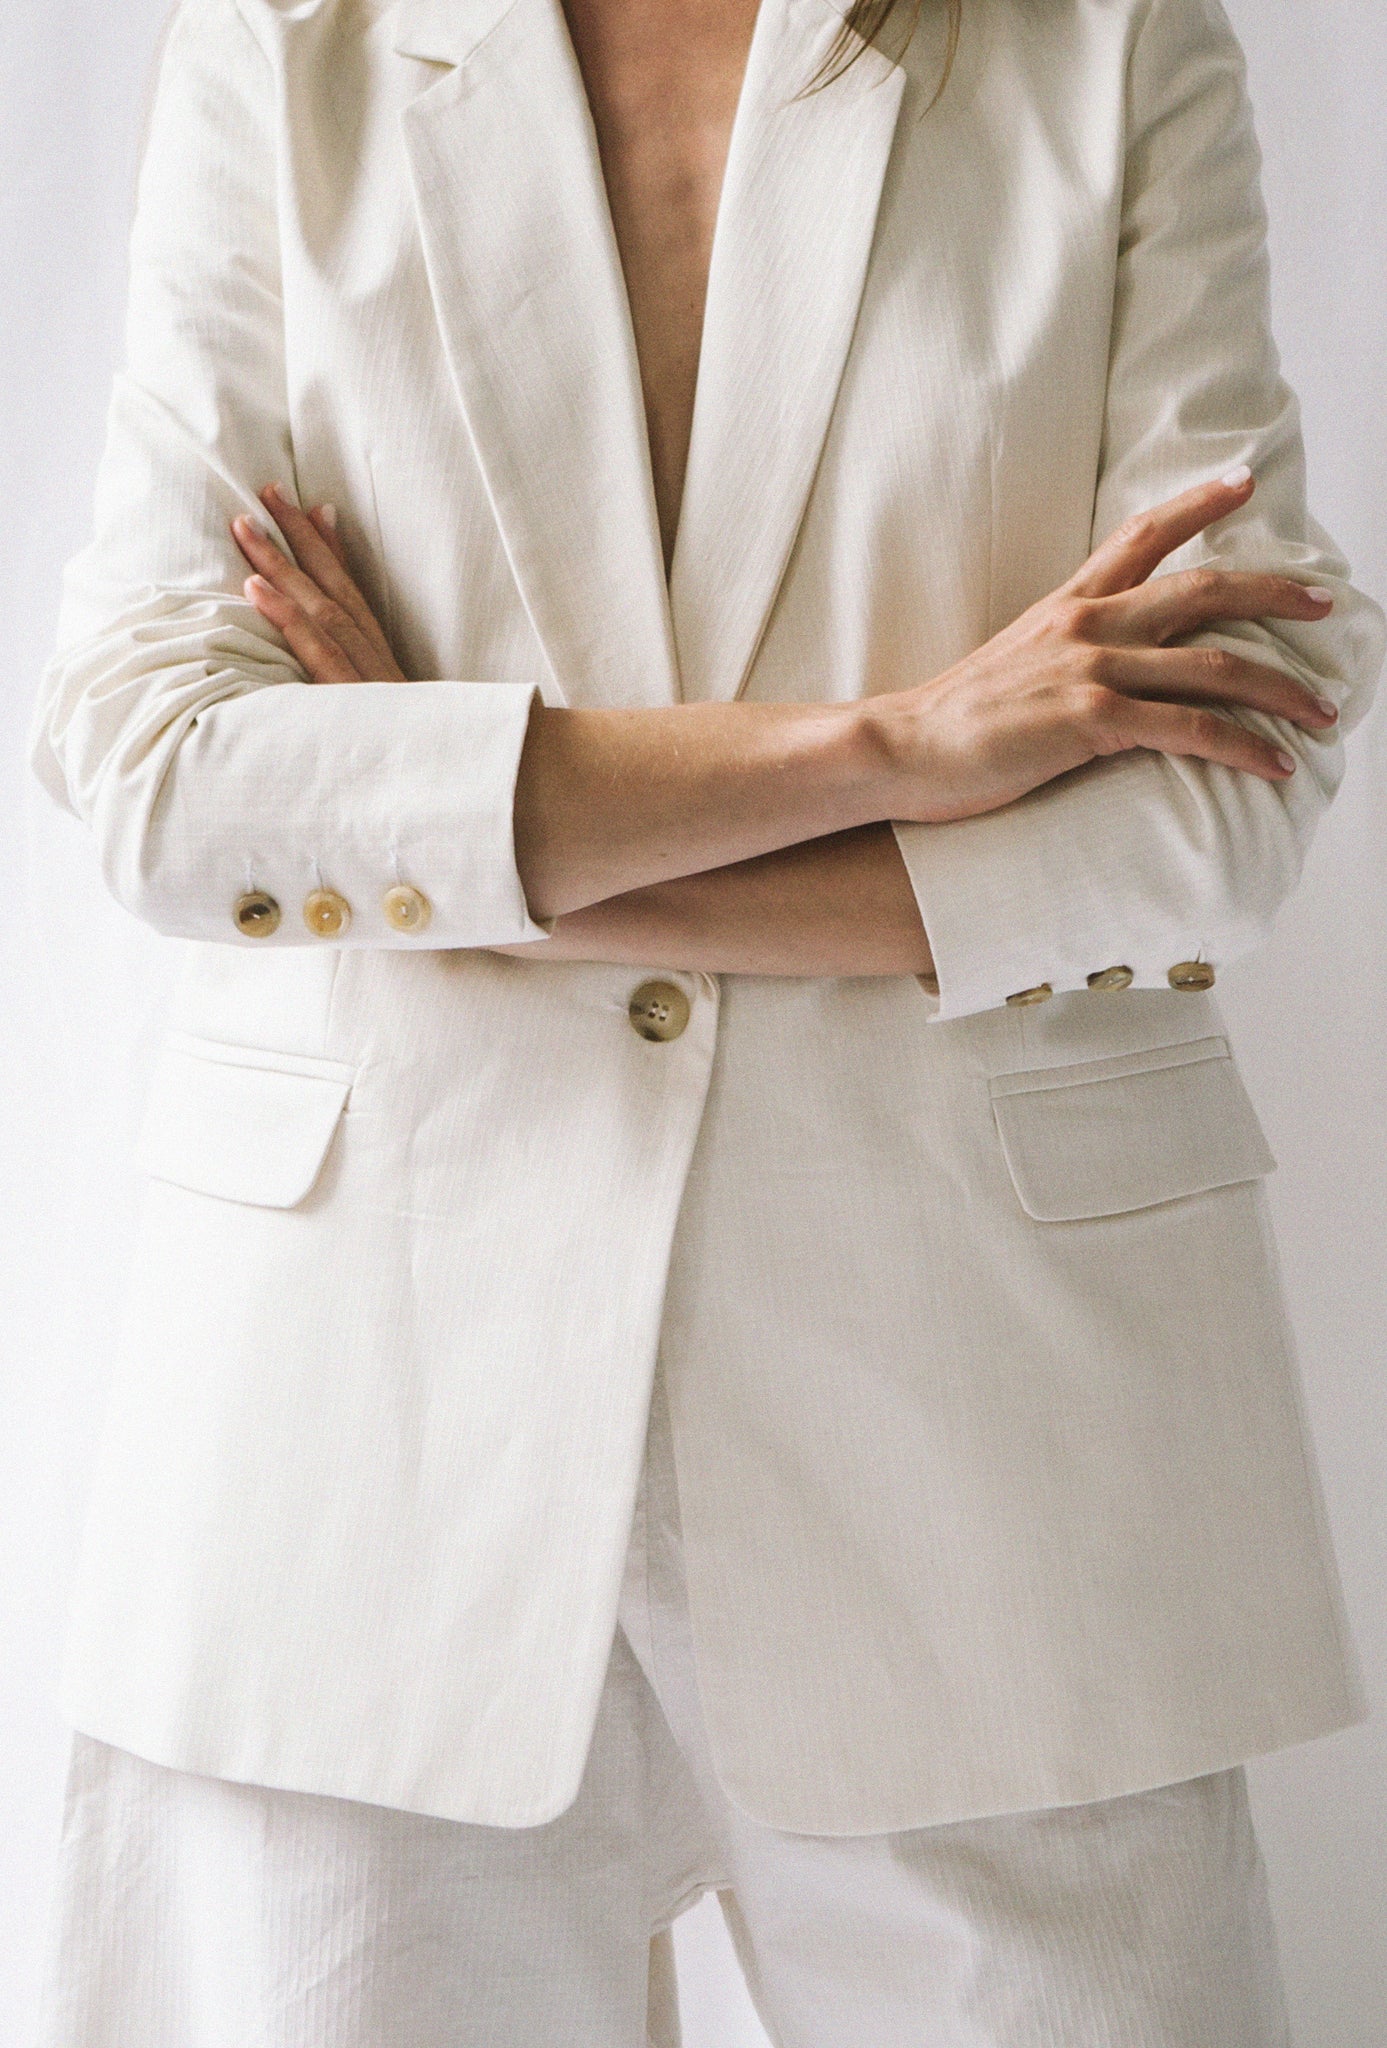 Veste blazer blanche écoresponsable. 3 Boutons vintages de seconde main sur le bout des manches et 1 pour fermer la veste.